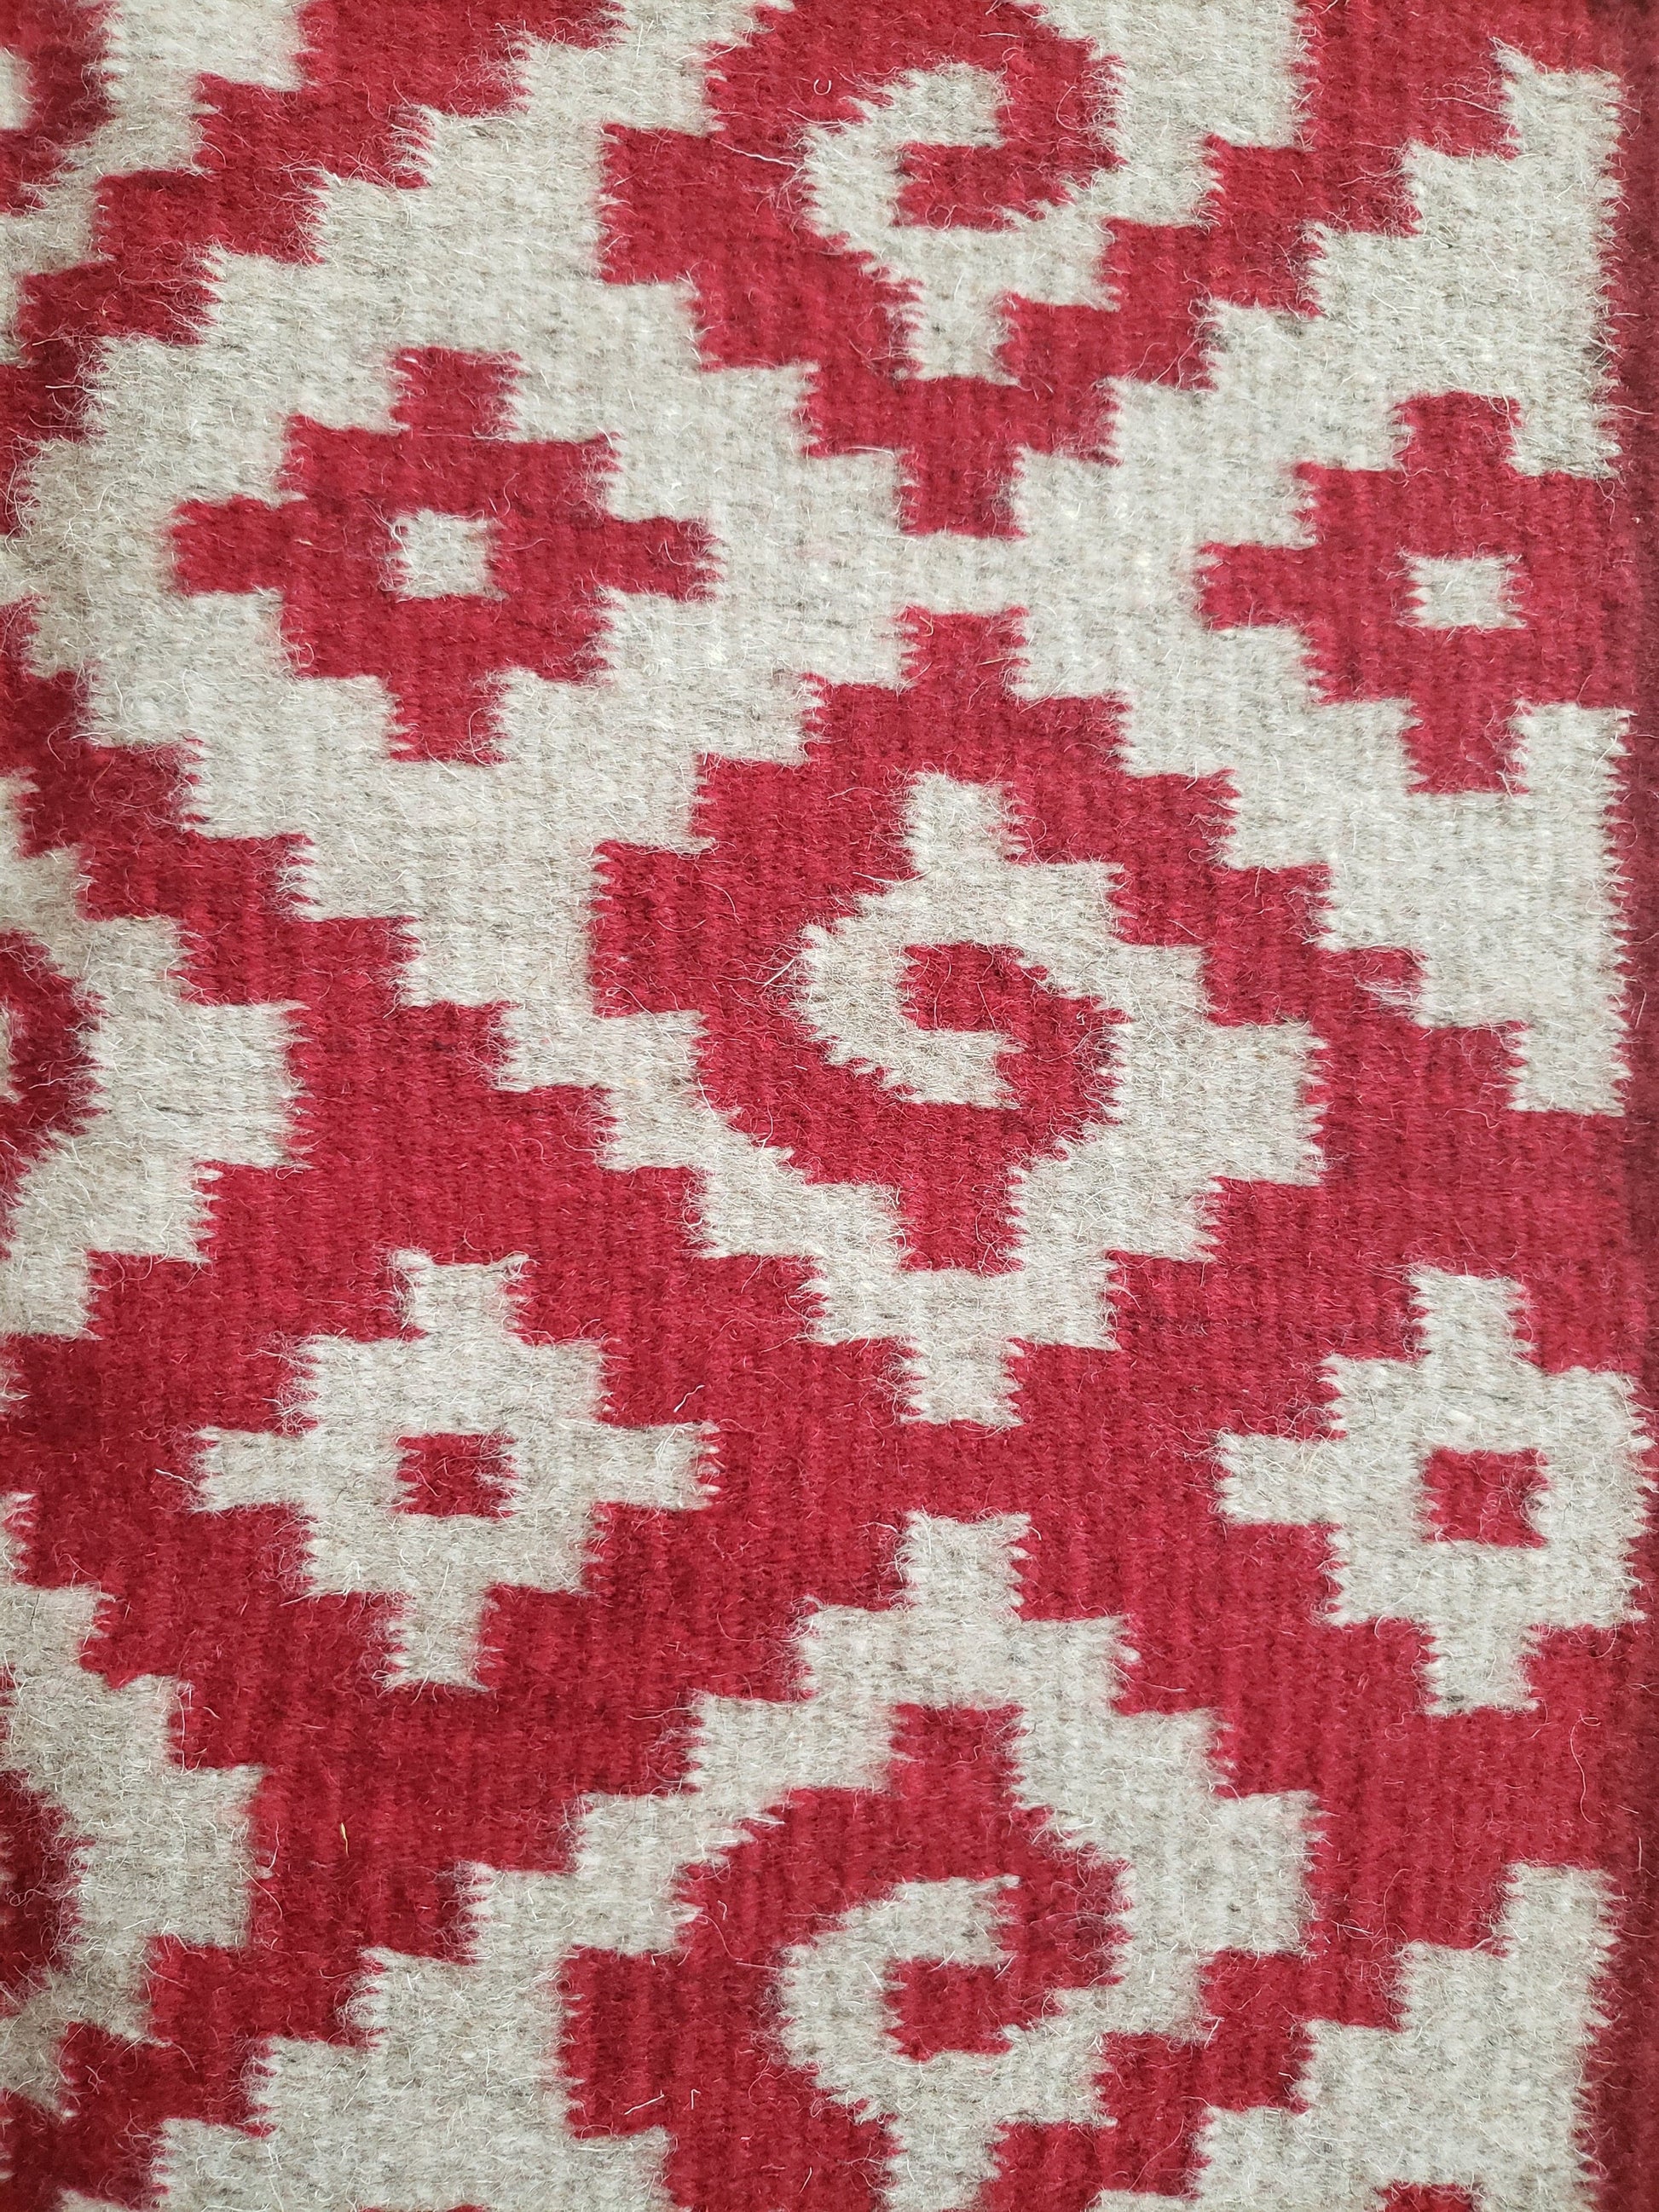 Detalle de tapete mexicano, tejido en telar y teñido artesanalmente. Diseño geométrico con grecas color rojo, tinte natural de grana cochinilla.